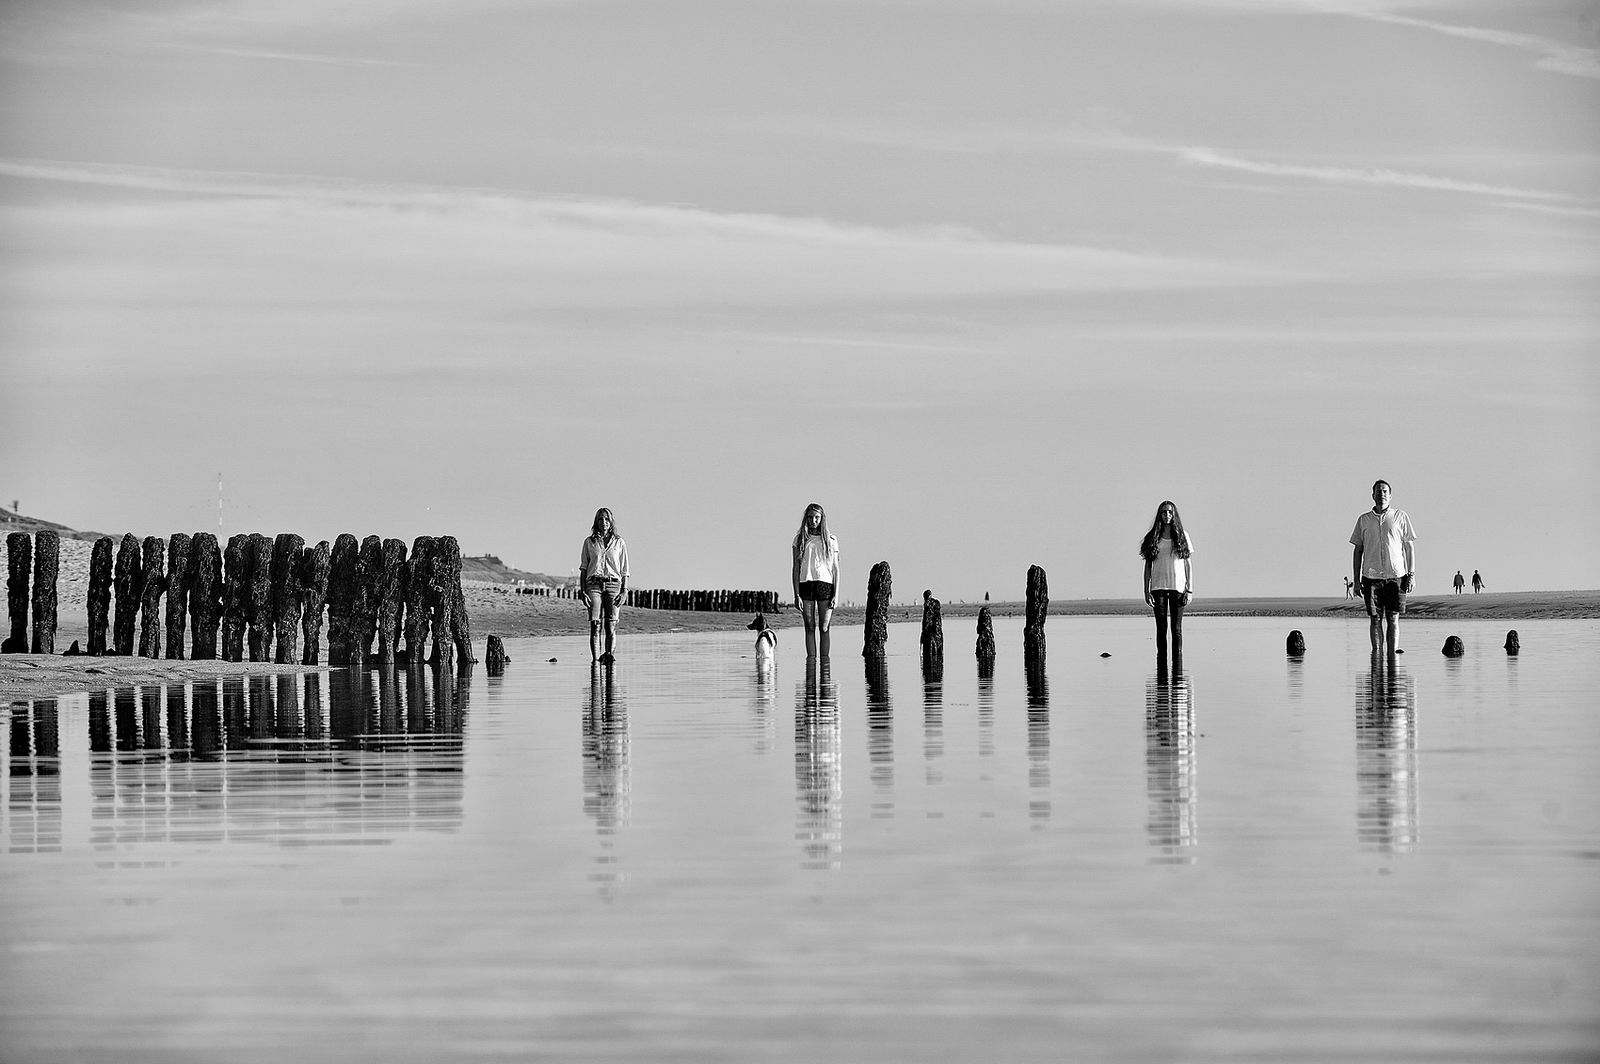 Eine vierköpfige Familie steht starr und gerade im flachen Wasser der Sandbank auf der Westküste von Sylt, ihres Spiegelbild sieht man in der Meeroberfläche. Die Buhnen kompletieren das Bild